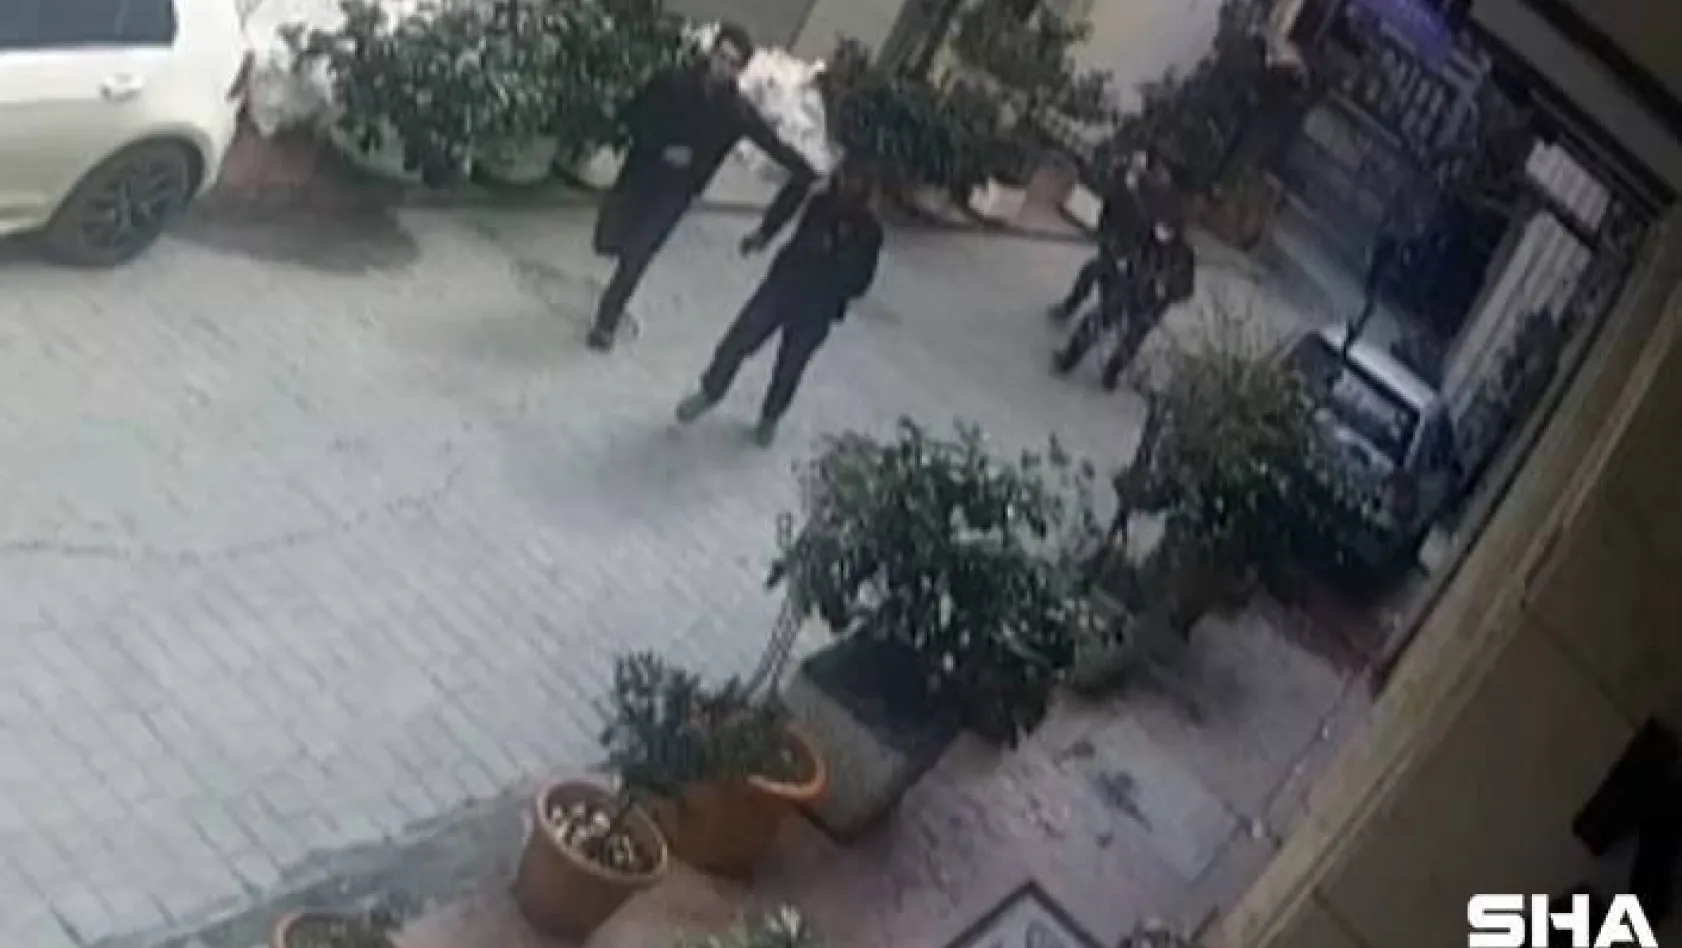 Taksim'de nefes kesen kovalamaca: Otel çalışanı hırsızları böyle yakaladı